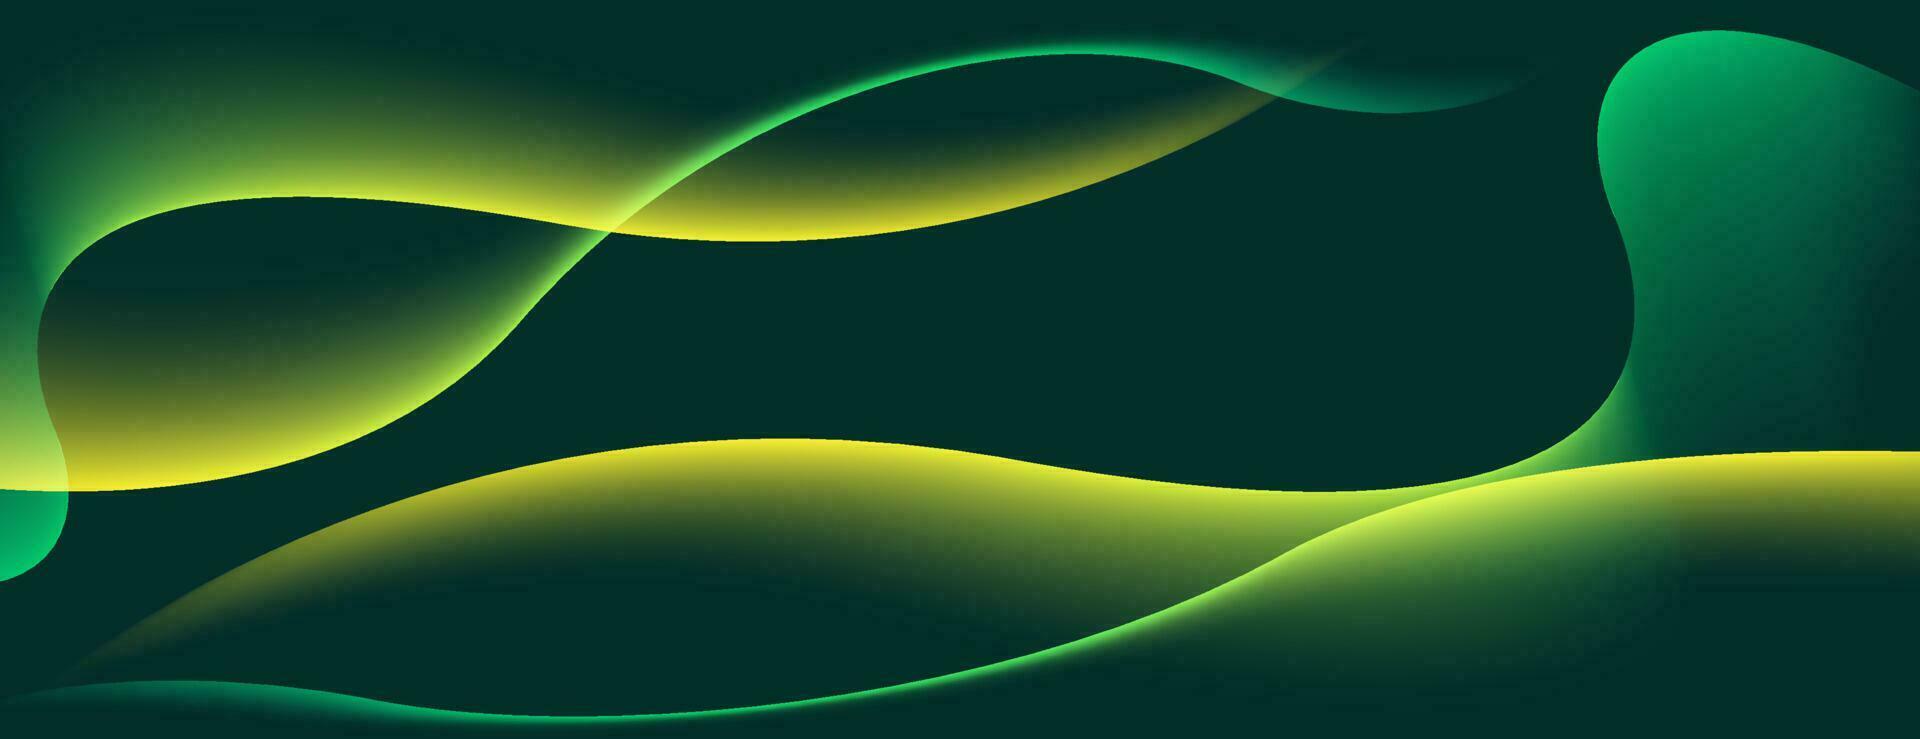 Fondo abstracto de onda dinámica con luz amarilla. plantilla de diseño vectorial vector